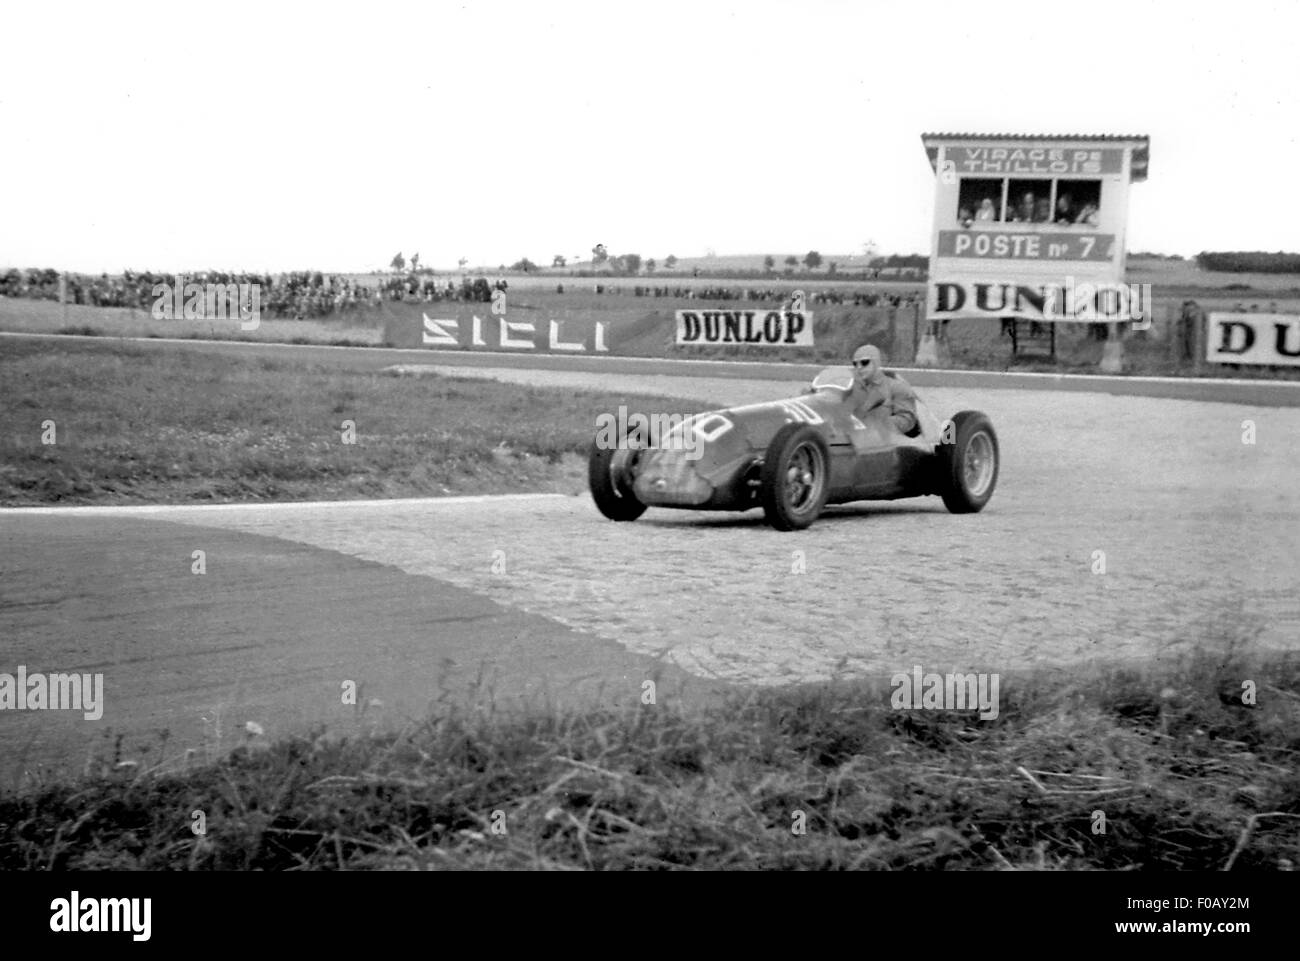 WIMILLE ALFA ROMEO 158 THILLOIS French GP Reims 1948 Stock Photo